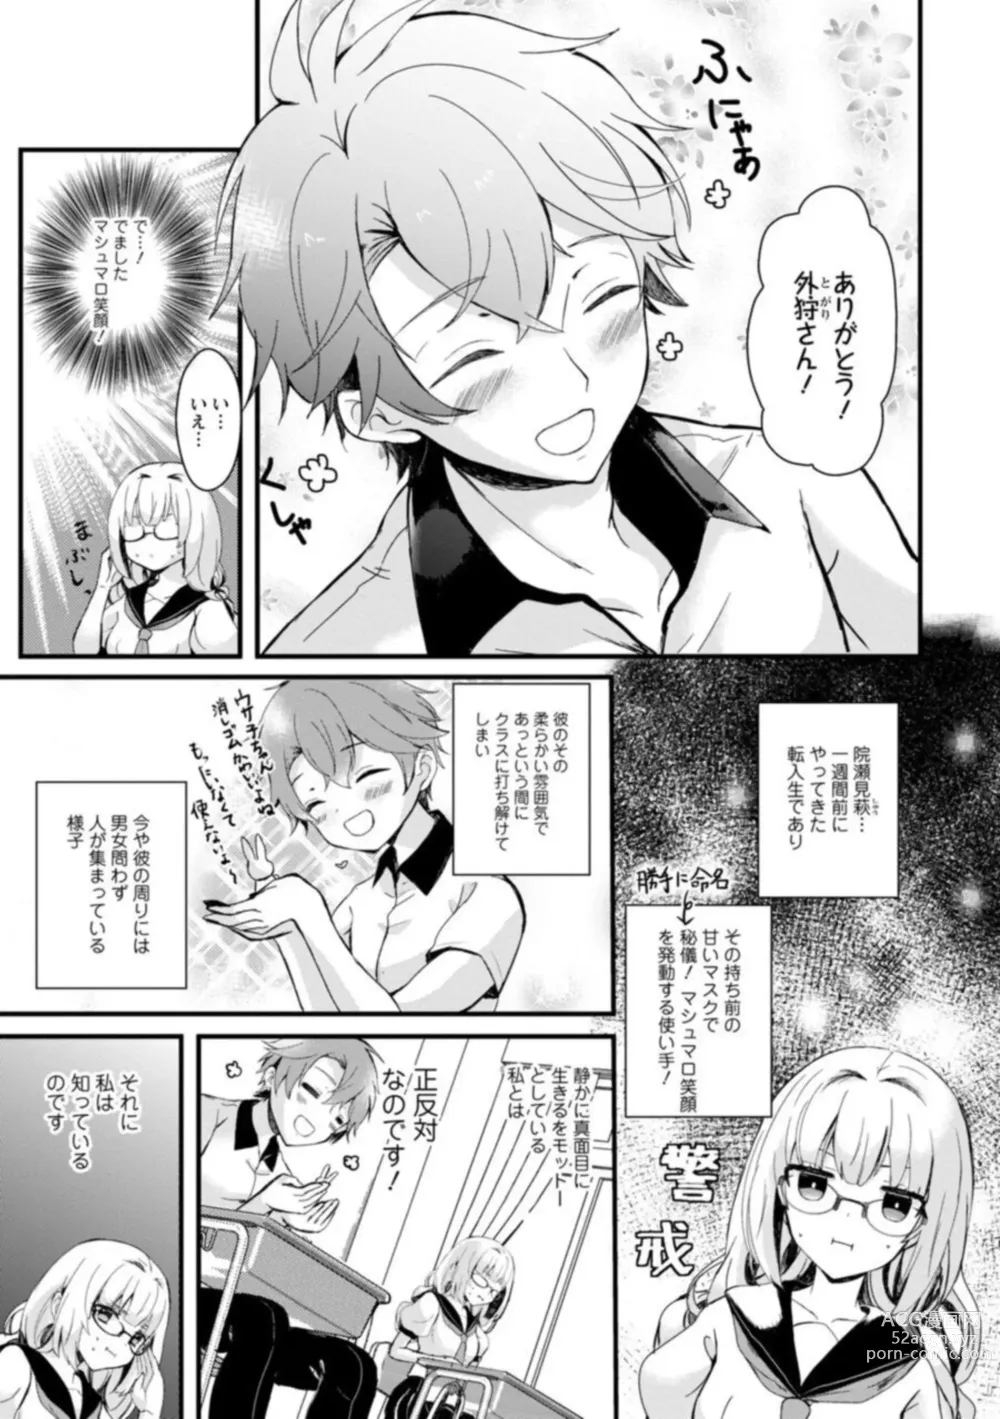 Page 7 of manga Inma no Torihiki ~ Shojonanoni oku made Sosoga re Chau! Inma no ai wa Atsuku Torokete ~ 1-2